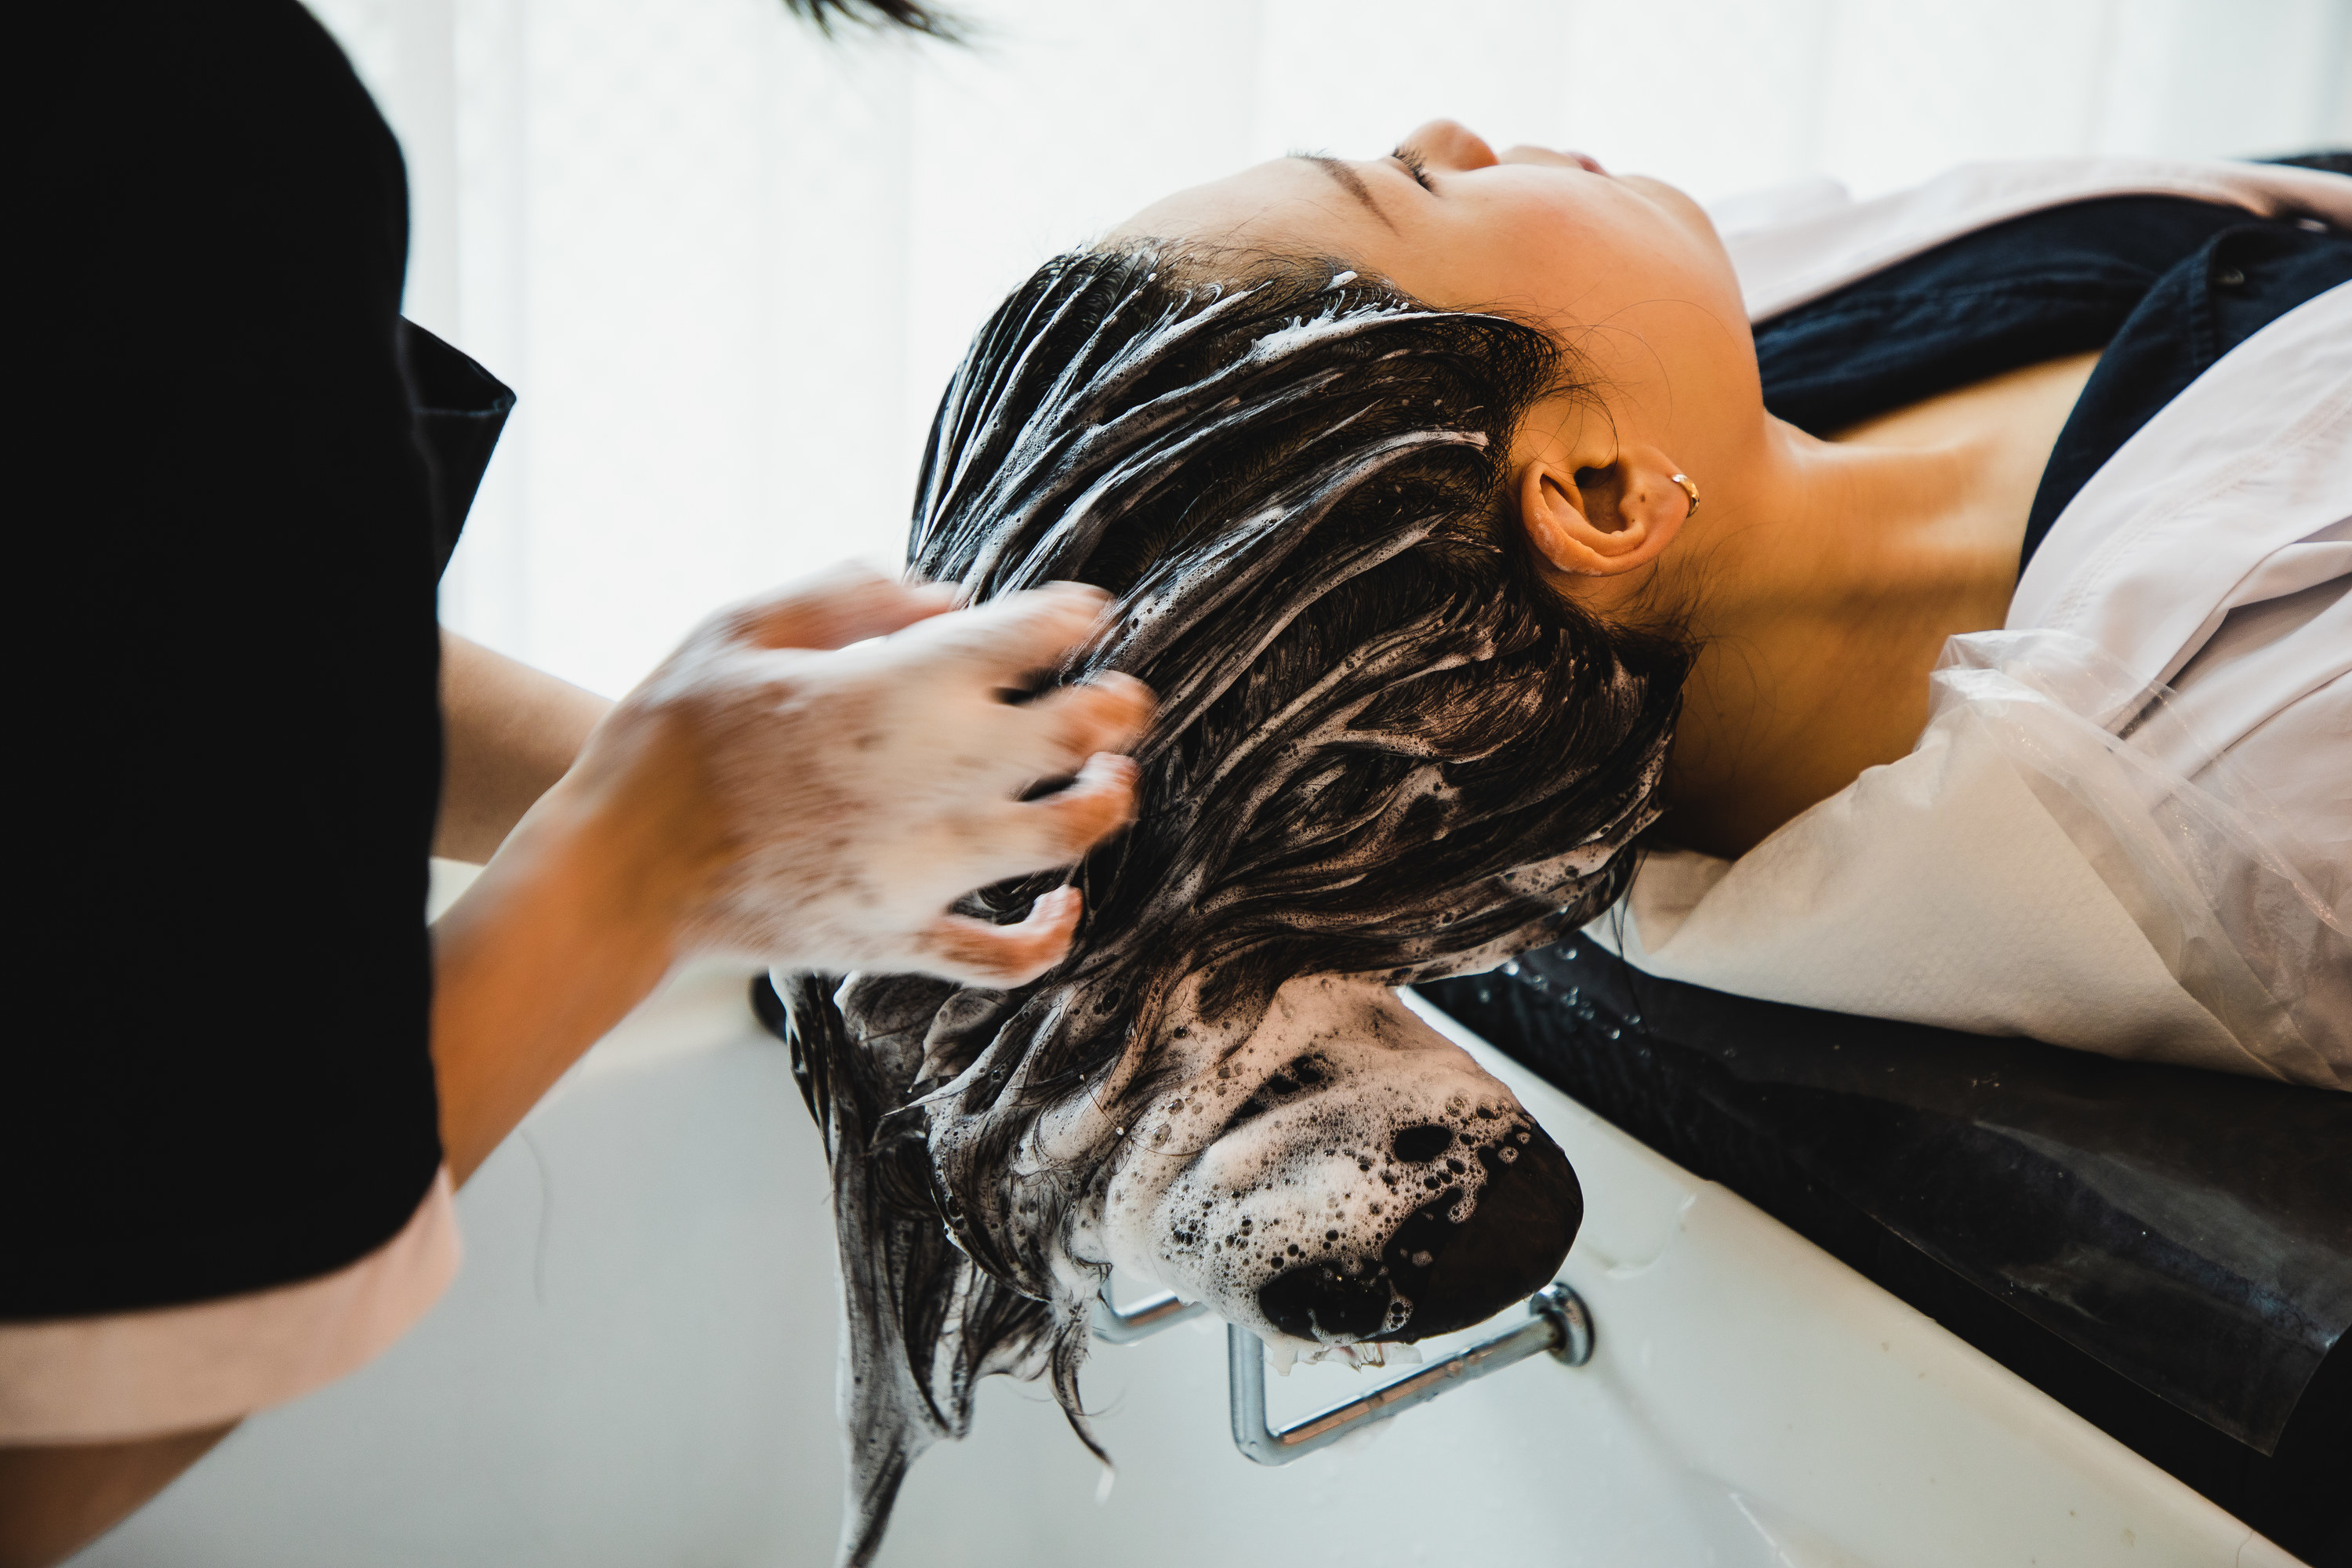 hair being shampooed at a salon